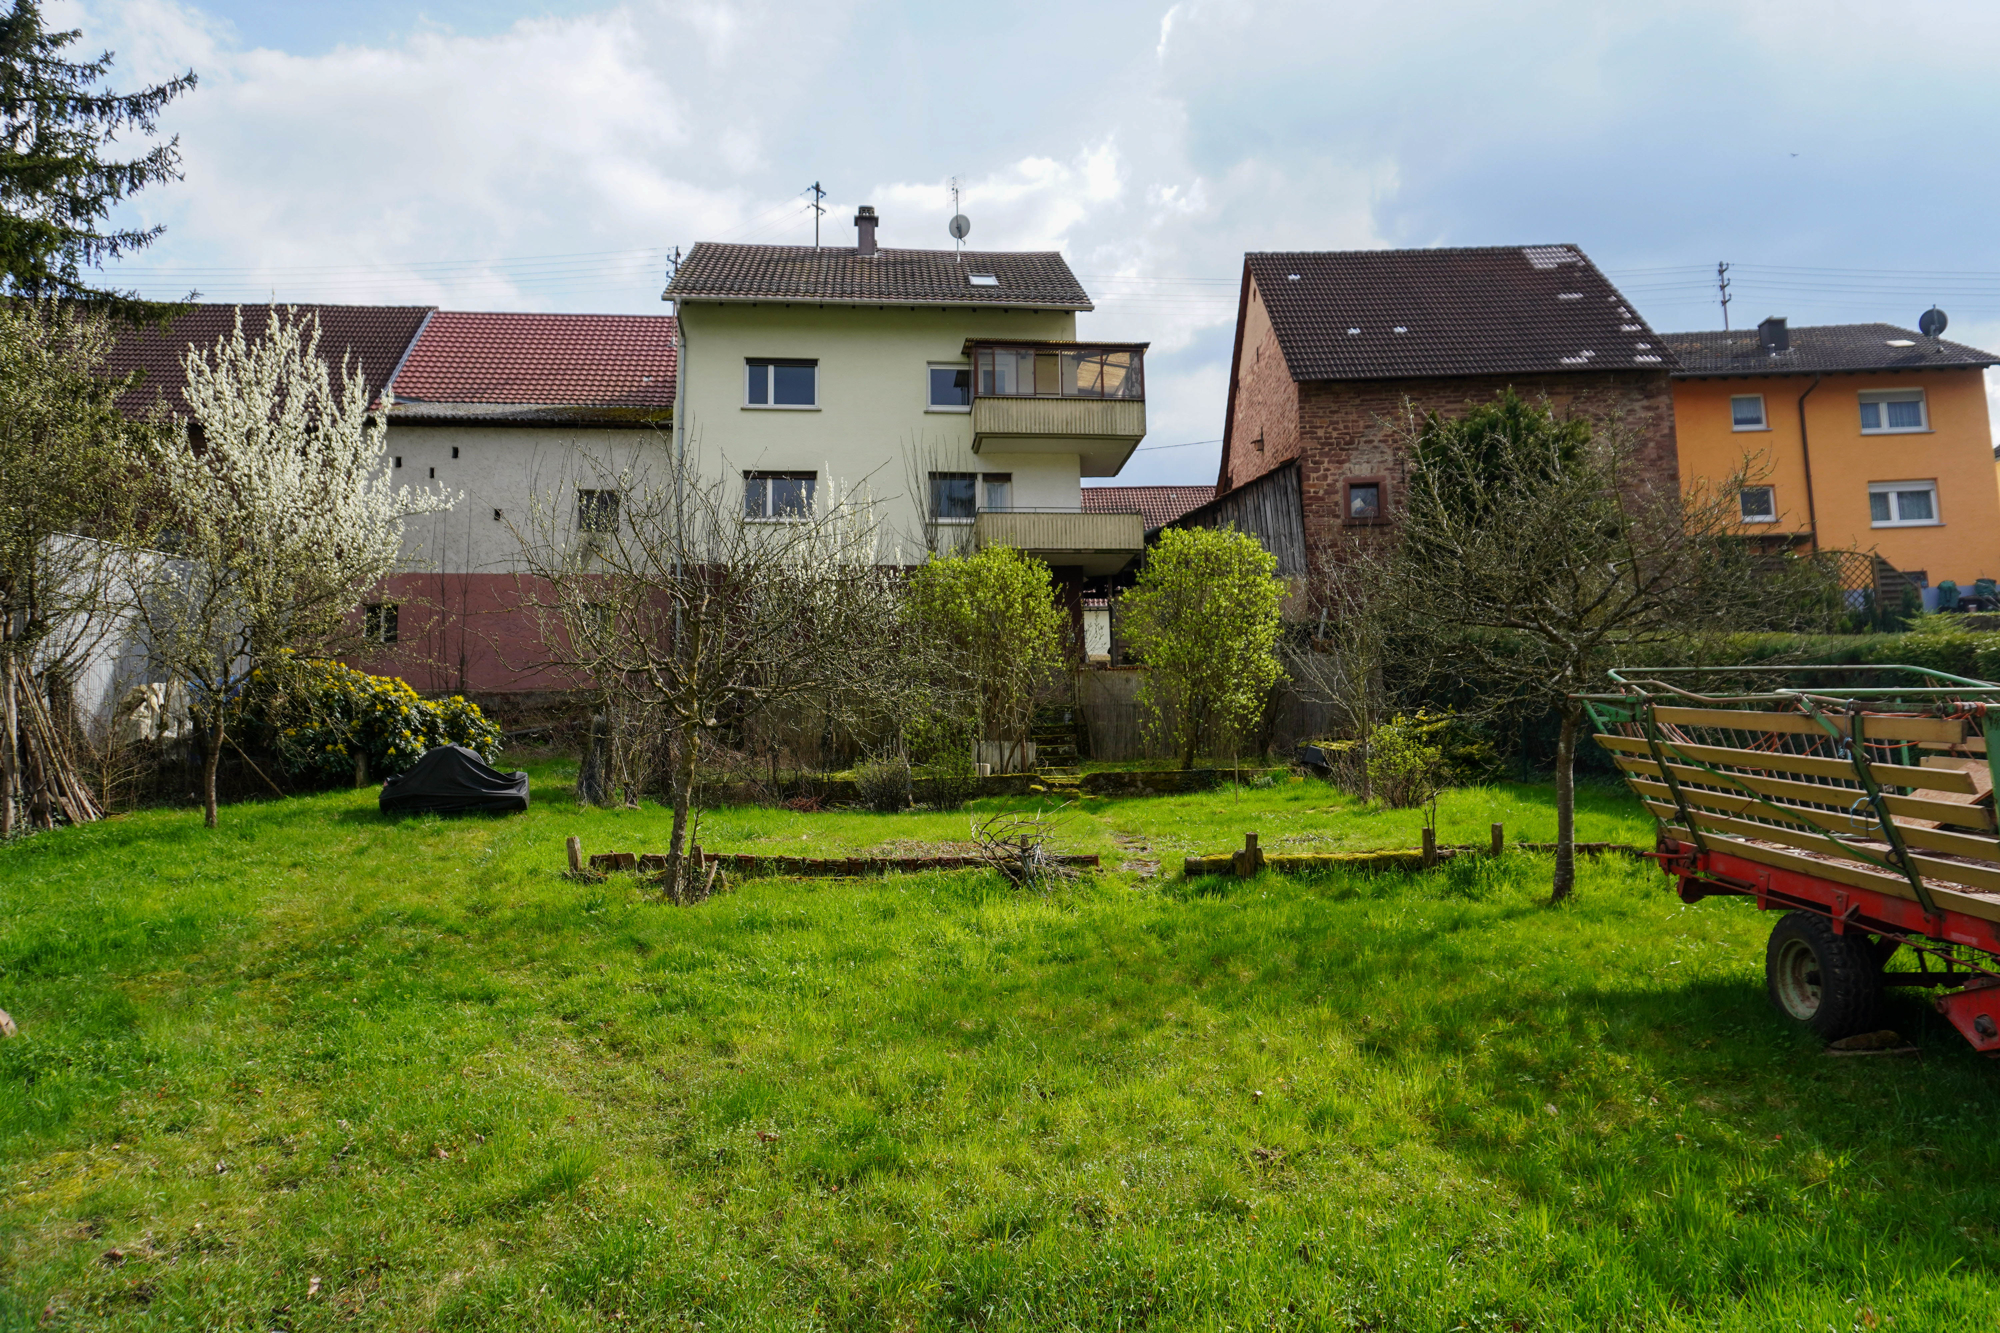 Garten I - Immobilienmakler in Heilbronn